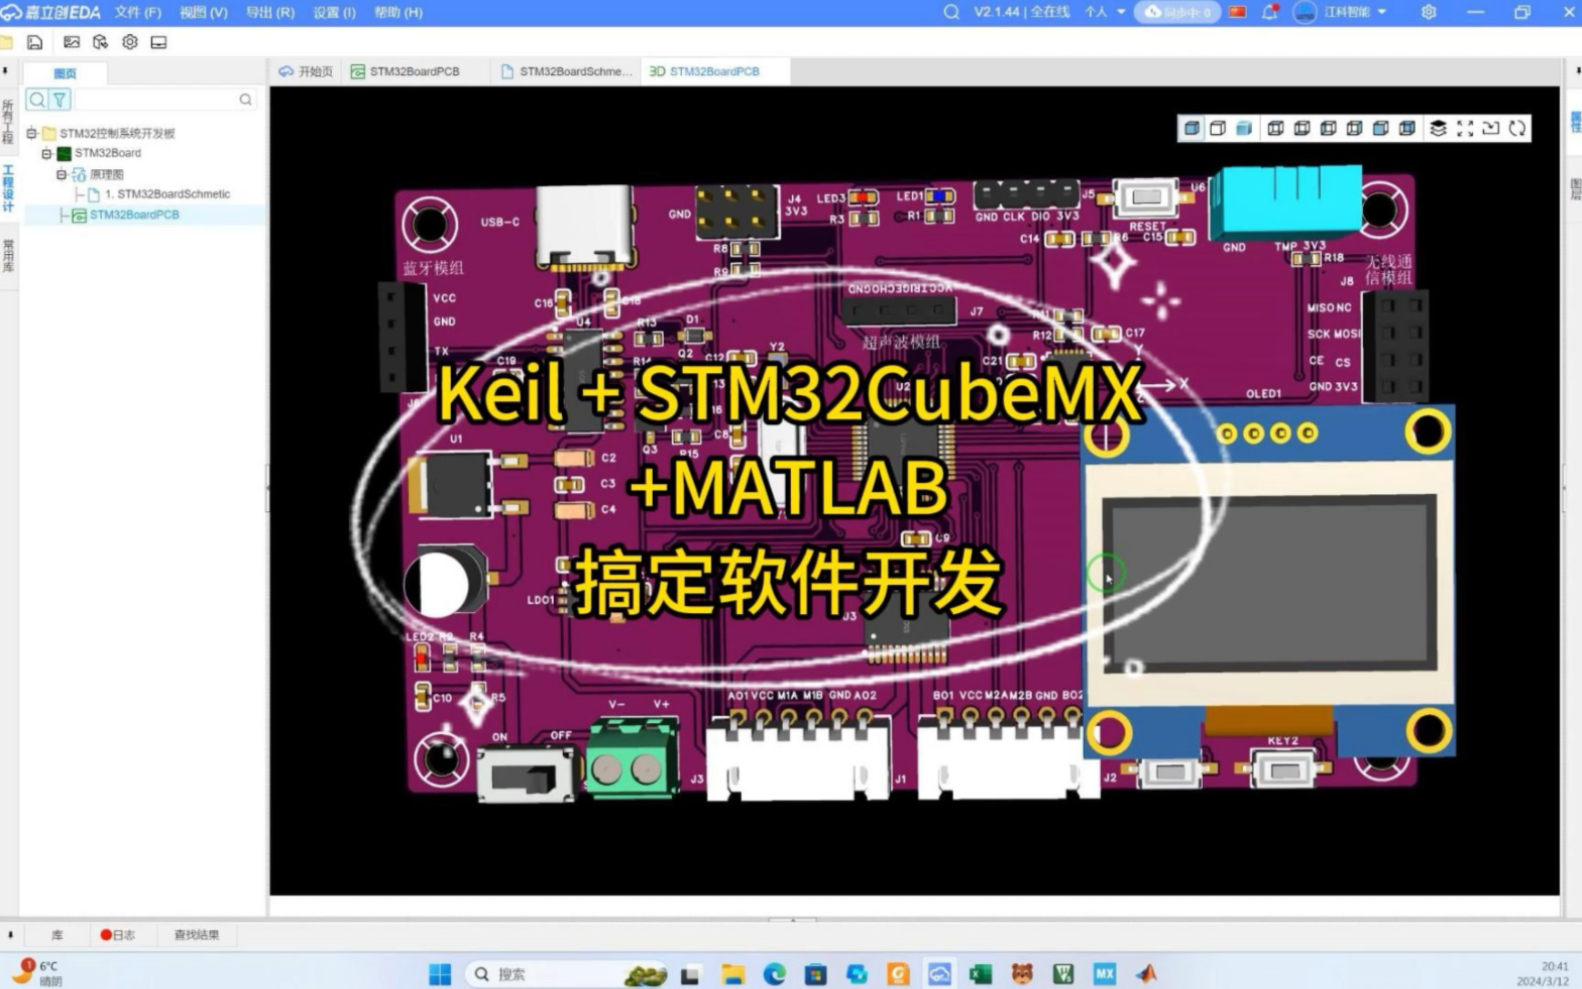 Keil加STM32CubeMX加Matlab搞定软件开发